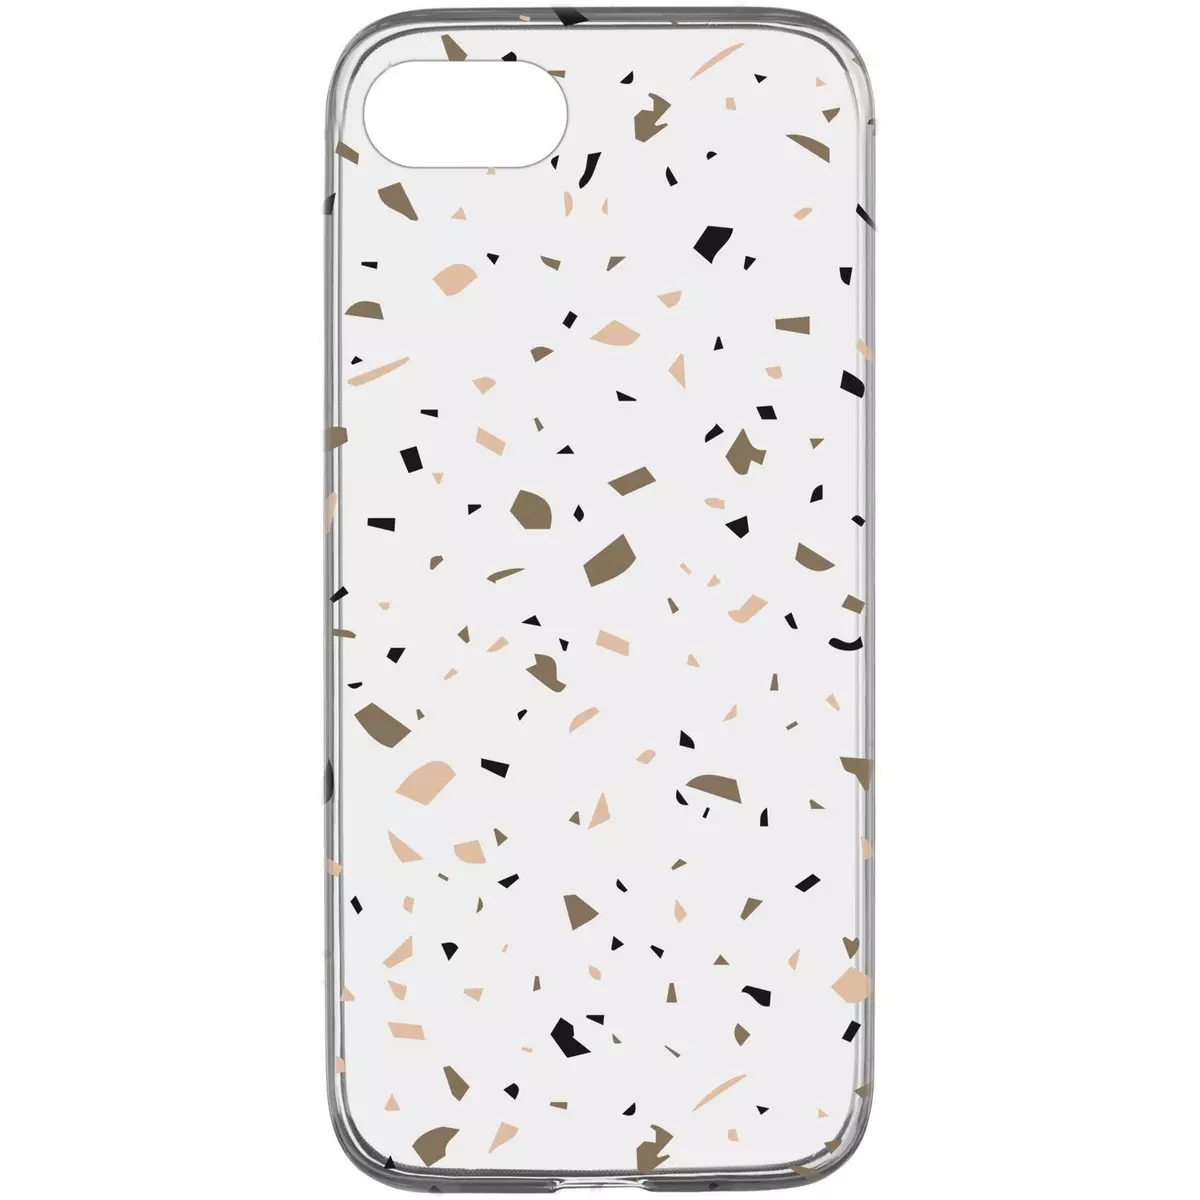 CELLULARLINE Coque de protection pour iPhone 6/7/8 Transparente et beige Terrazzo